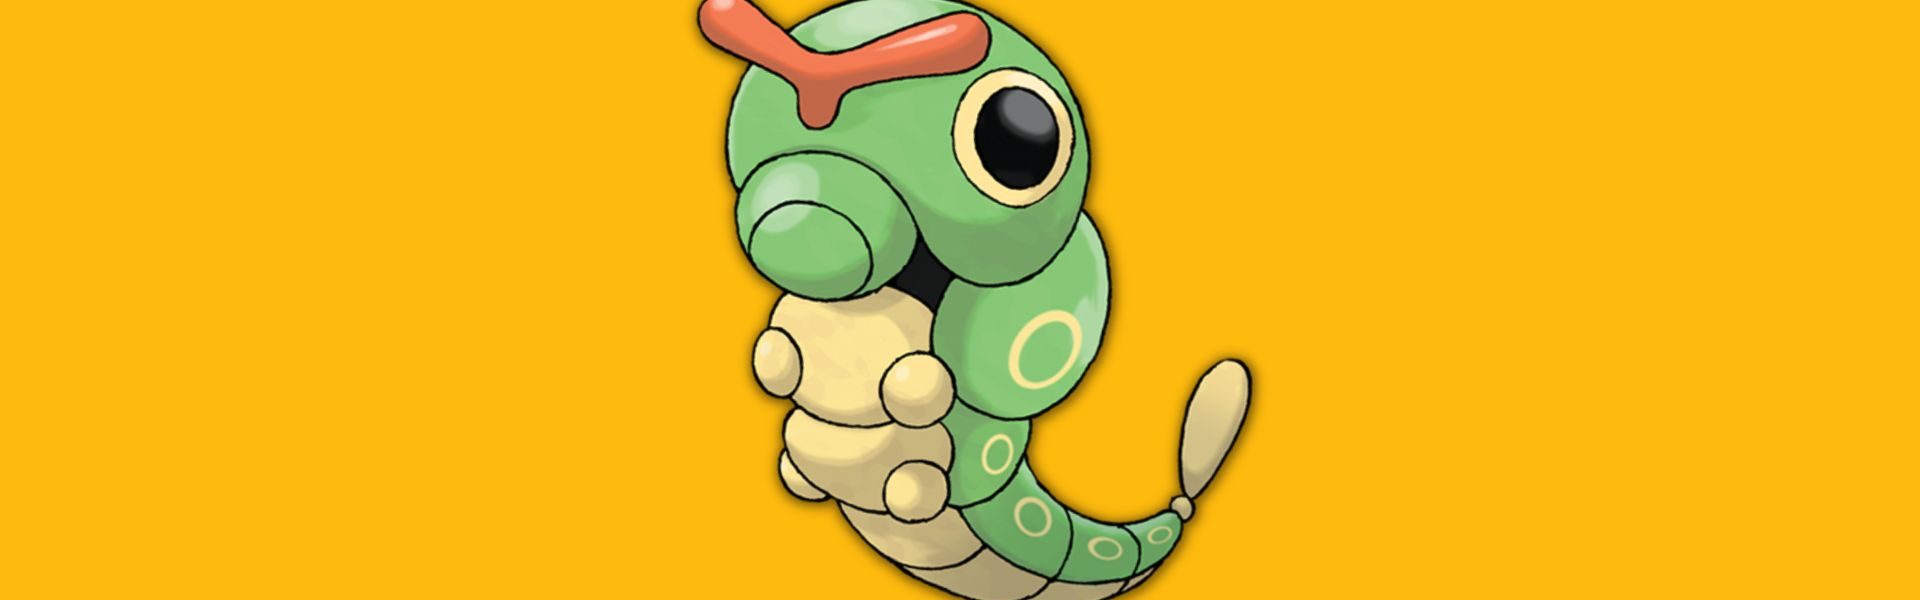 Bug słabości, odporności i siły Pokémonów